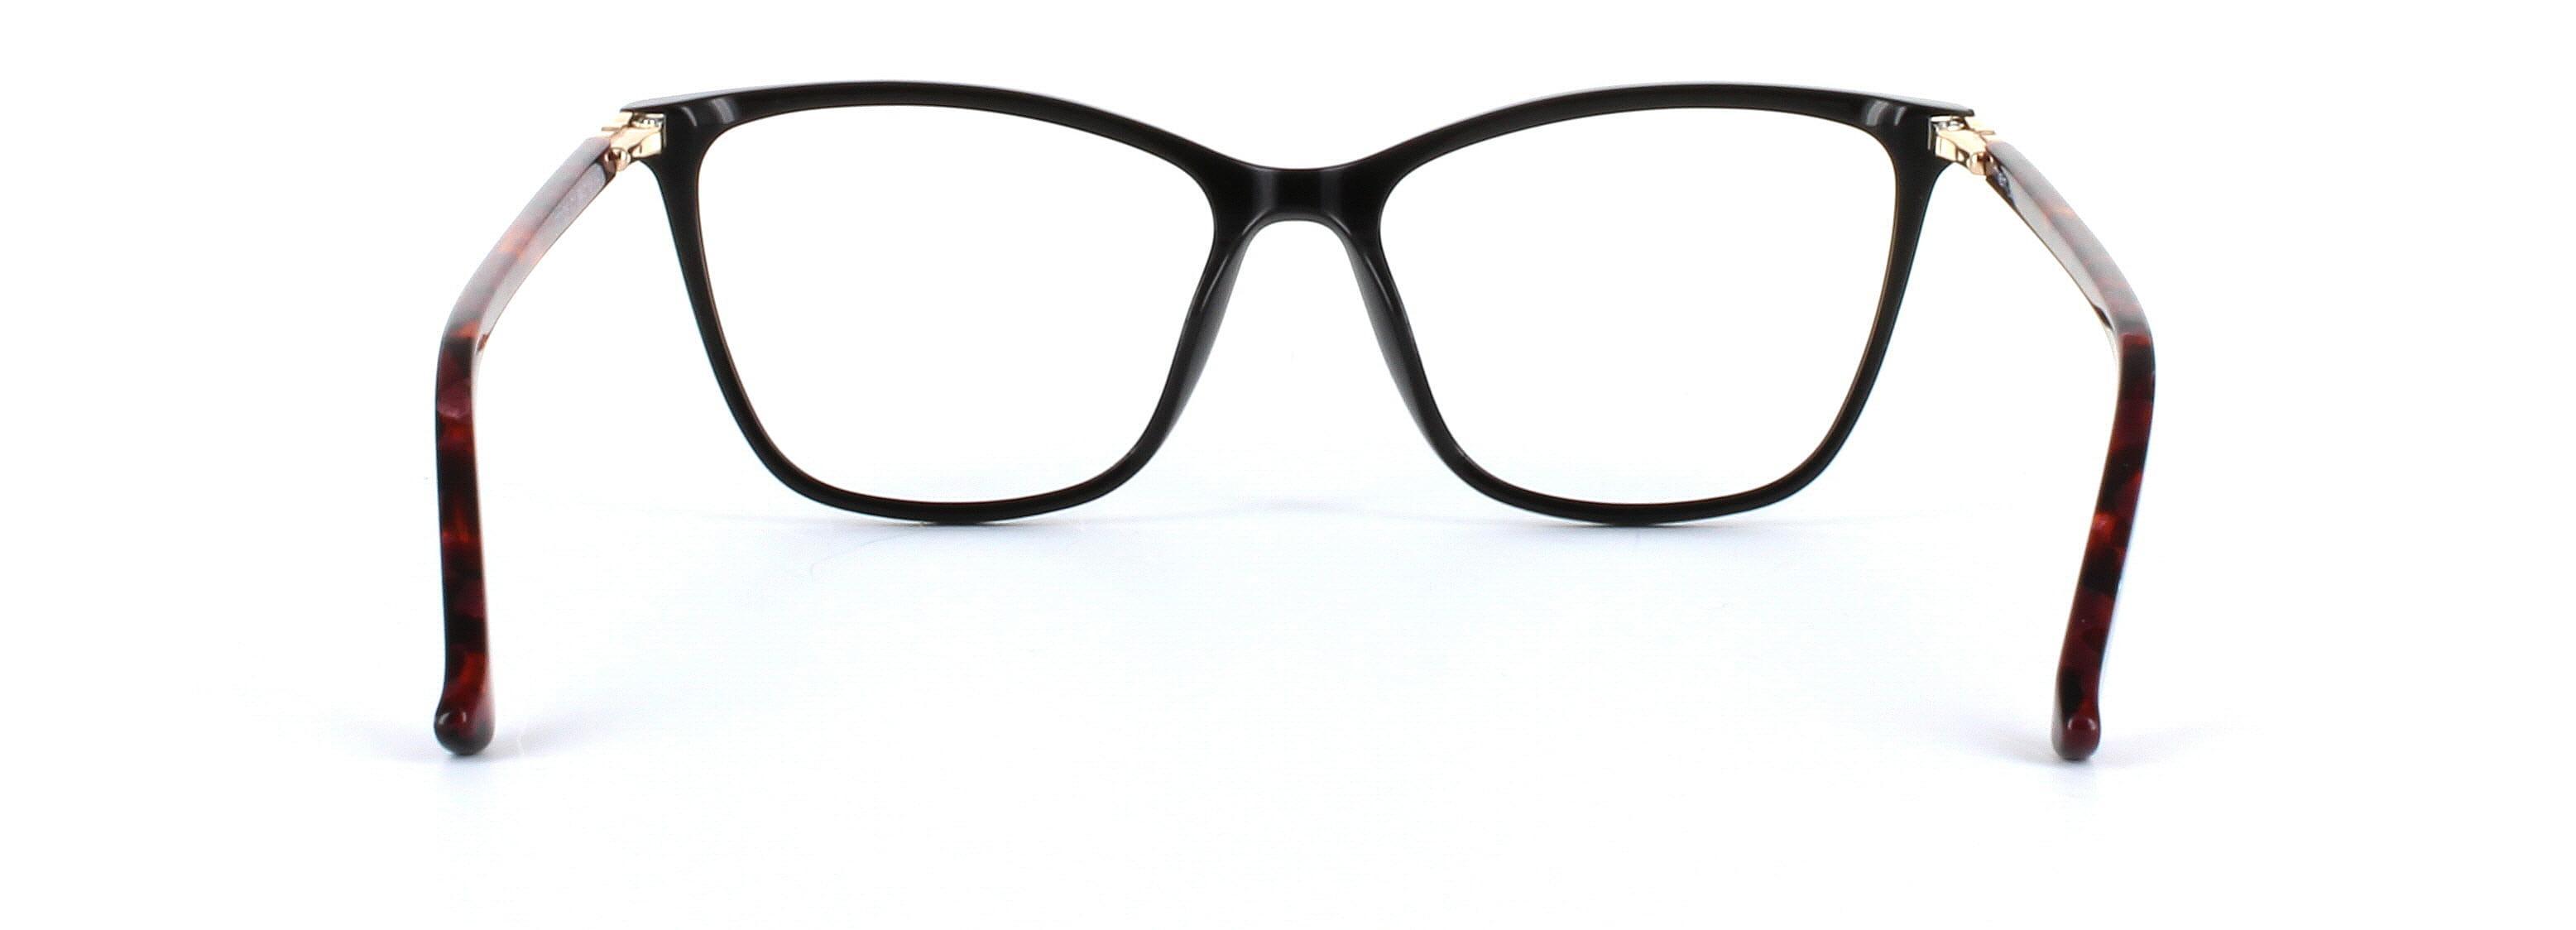 Gloria Black Full Rim Cat Eye Acetate Glasses - Image View 3